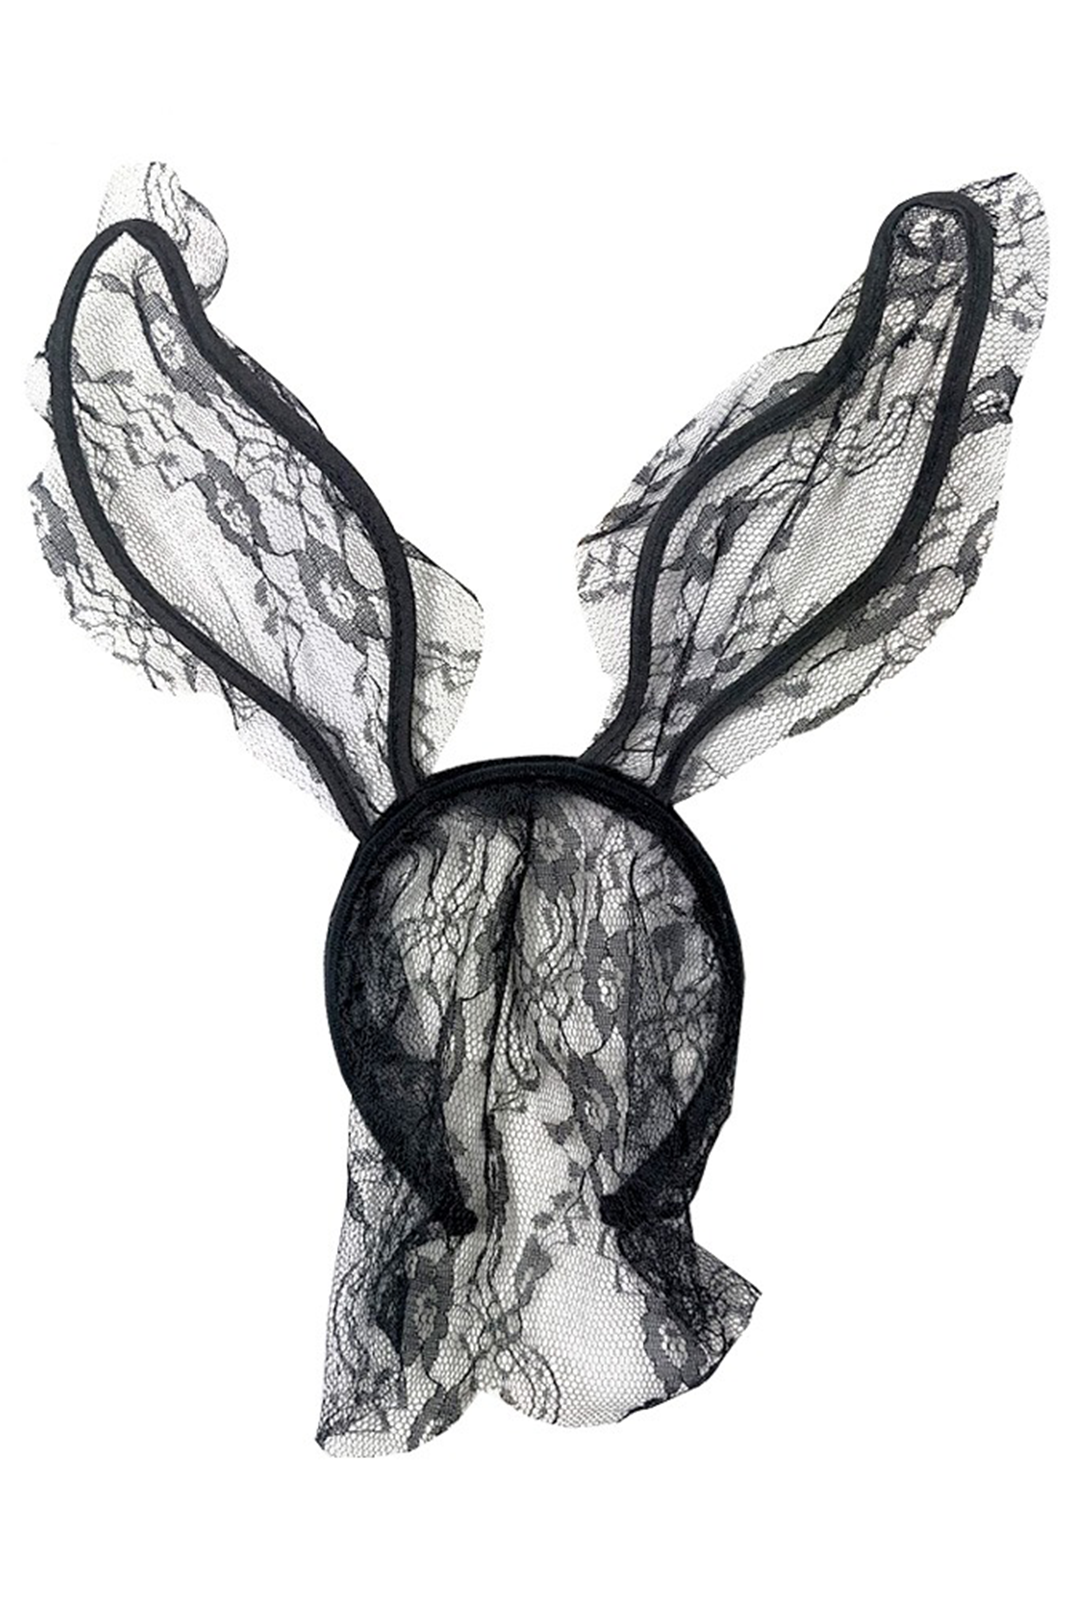 Black Lace Bunny Ears Headband Perth Hurly Burly 3722